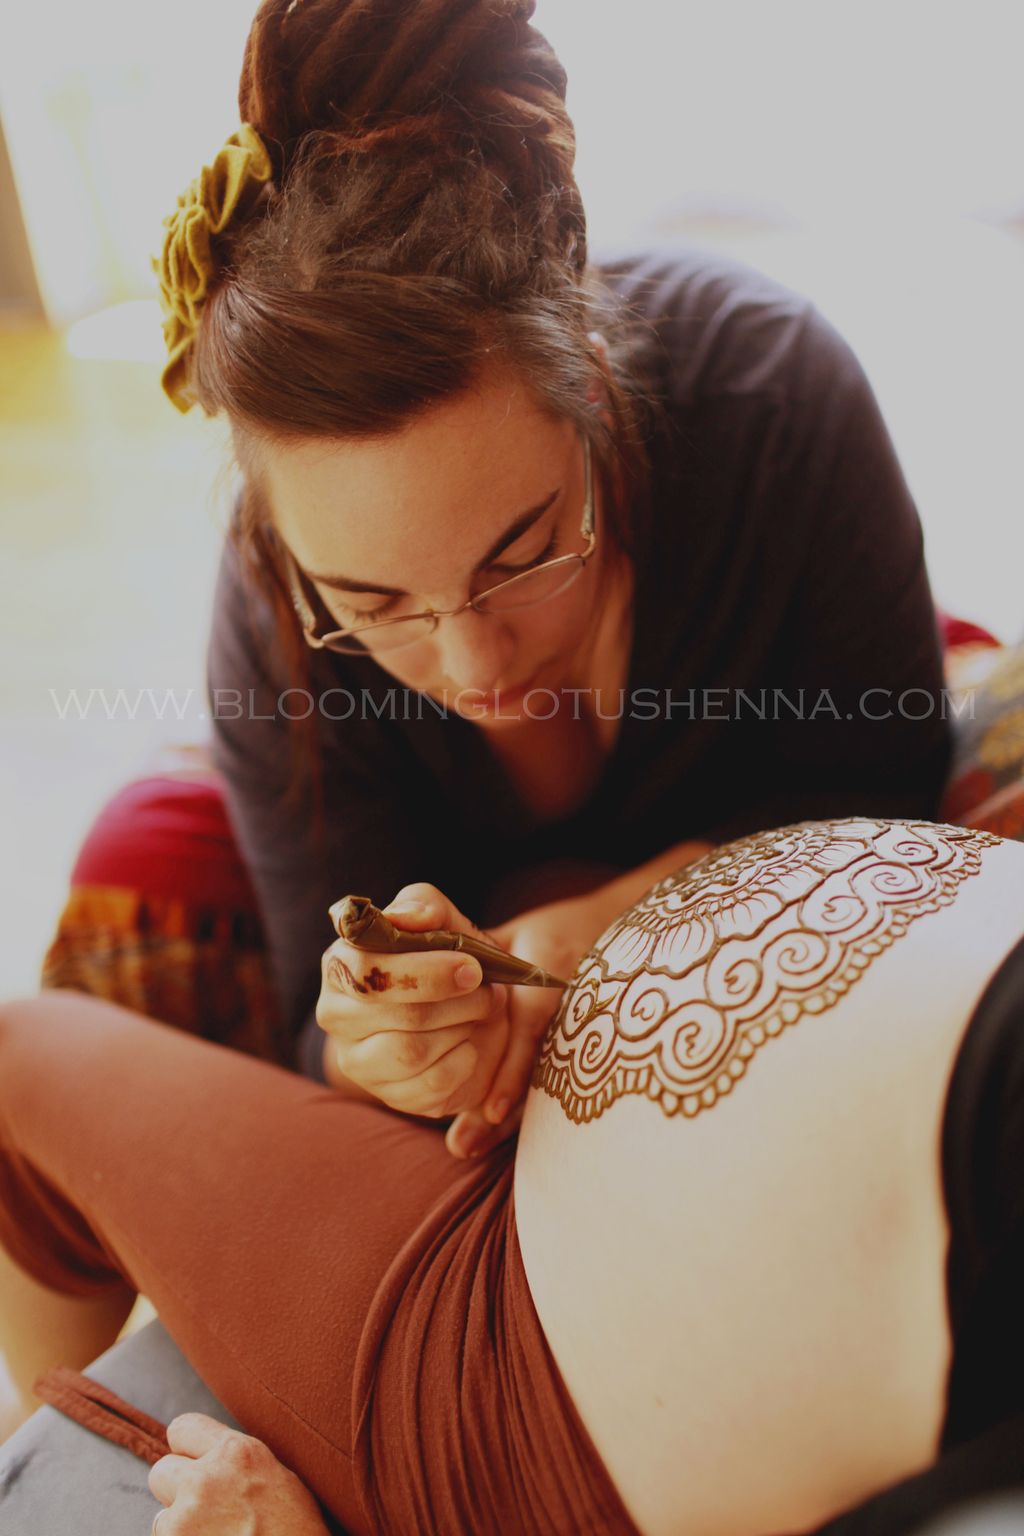 Blooming Lotus Henna